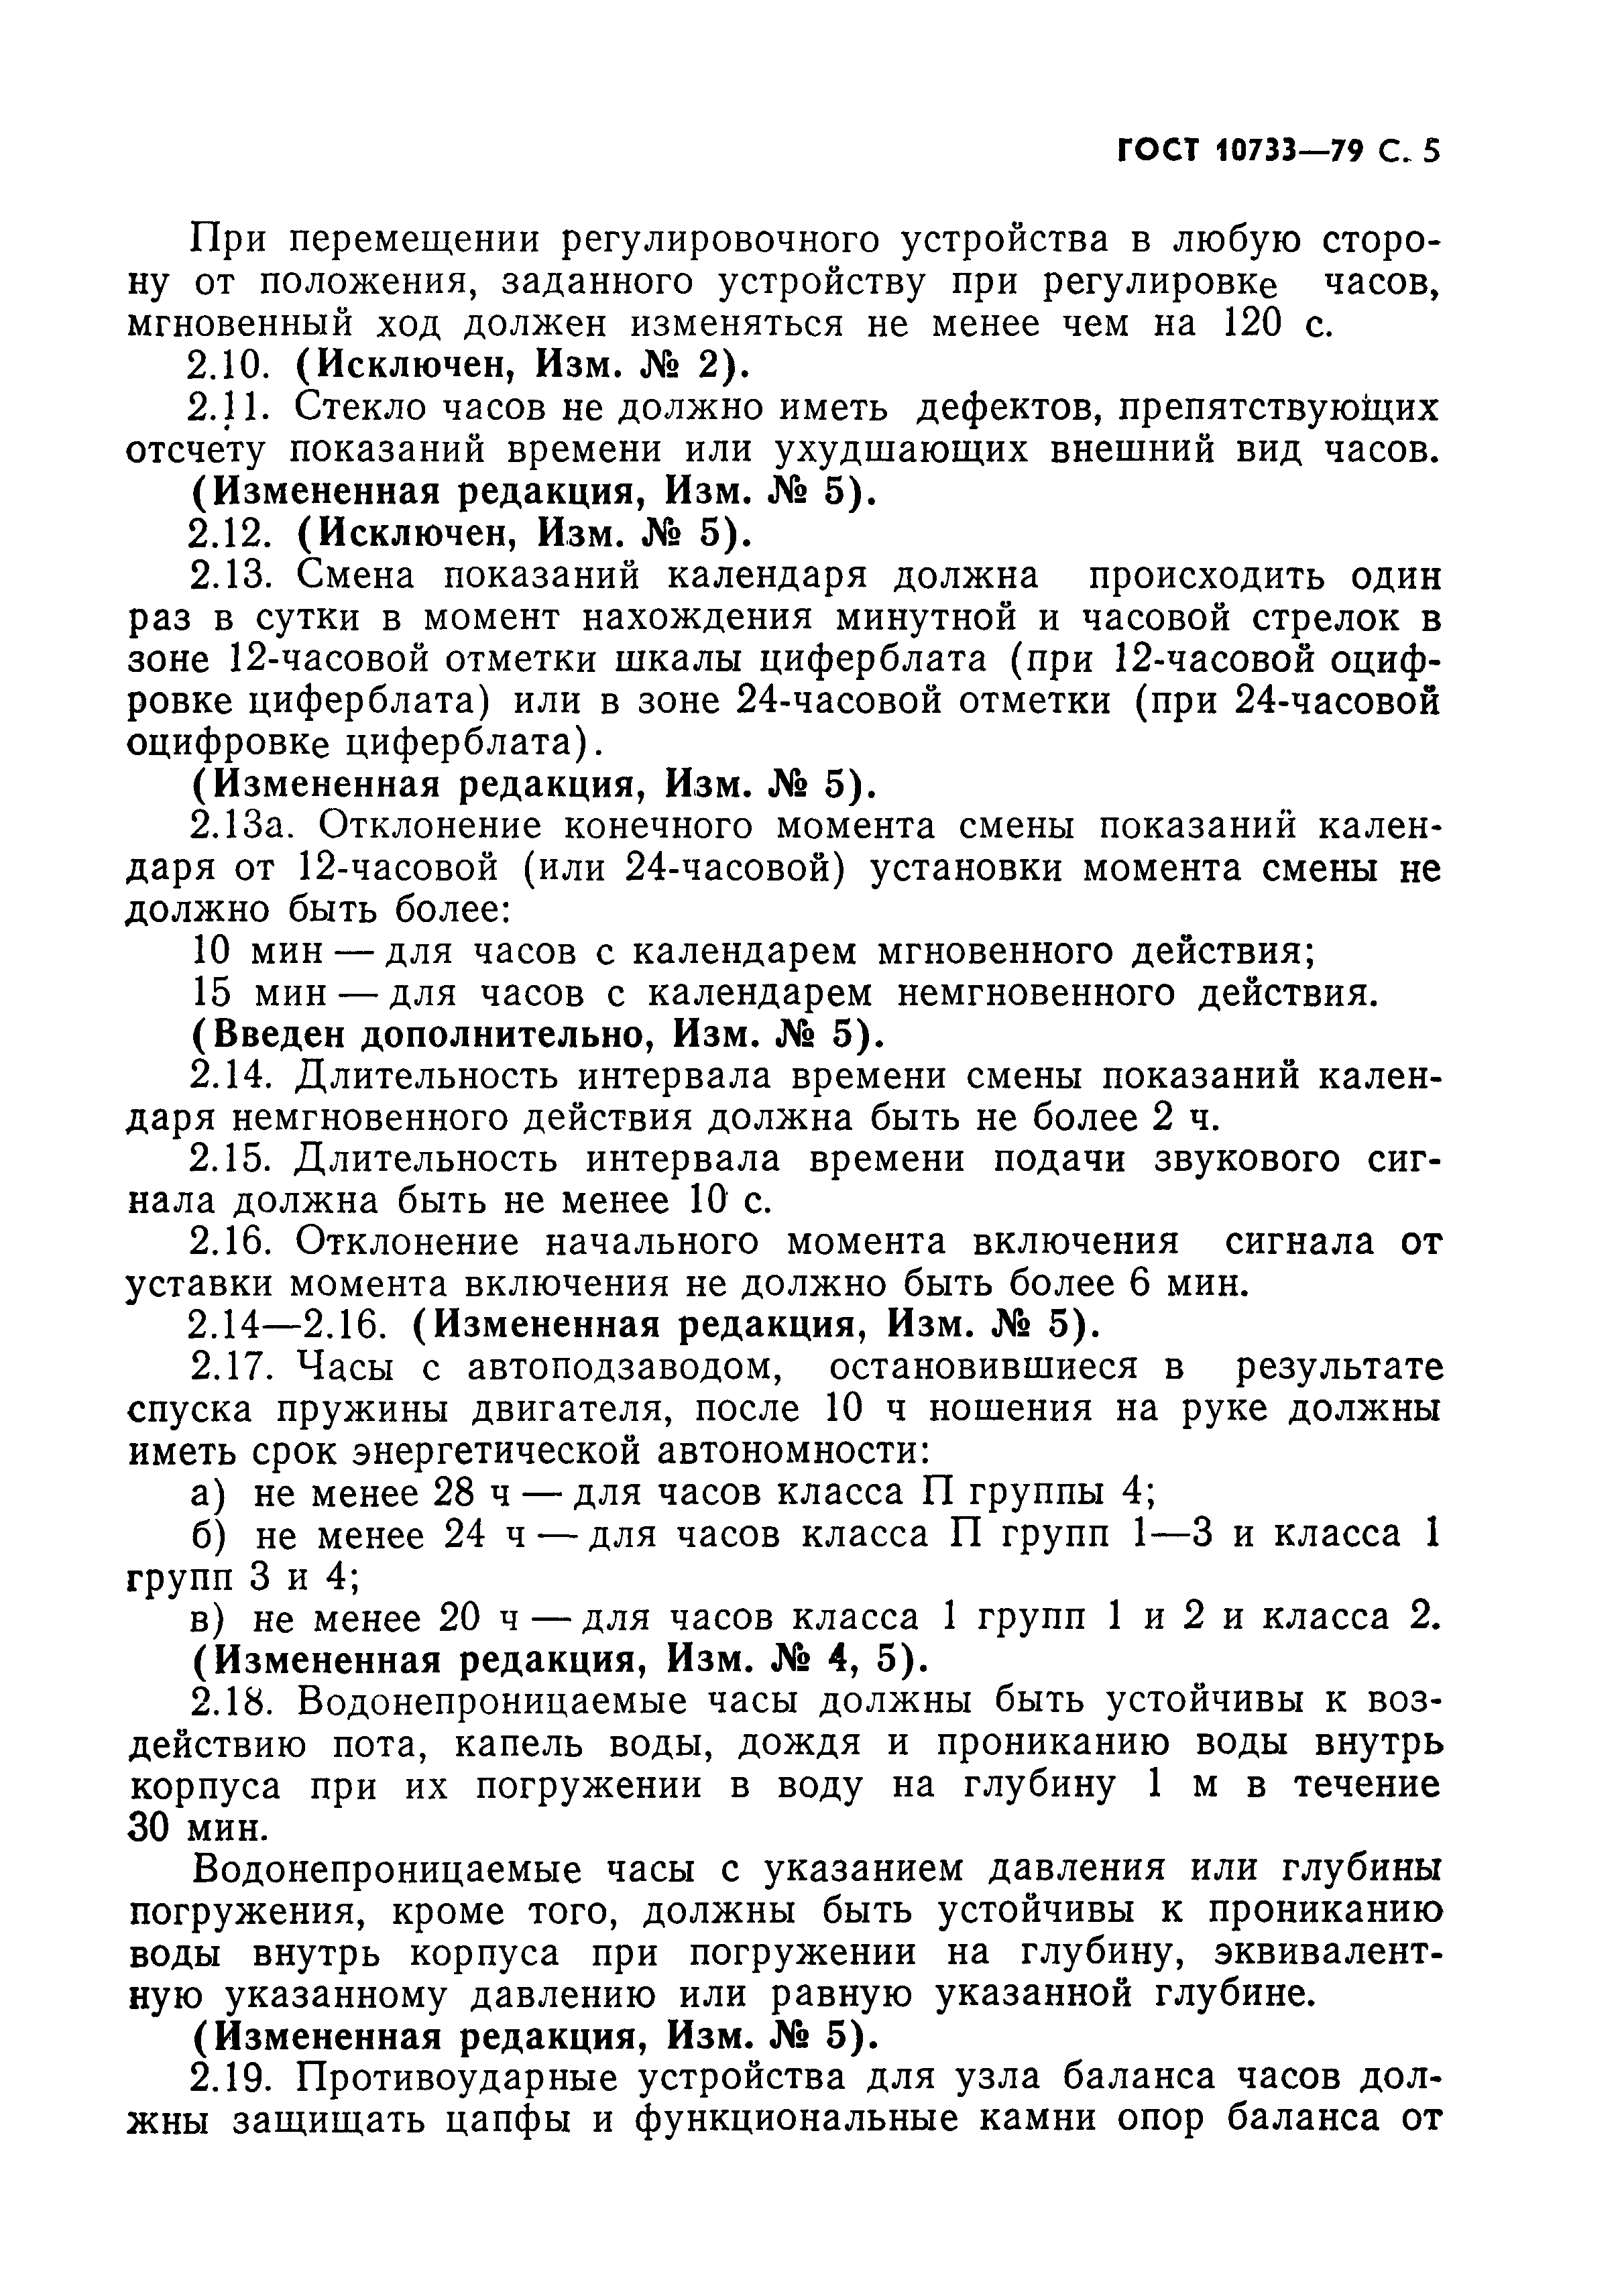 ГОСТ 10733-79, страница 6.